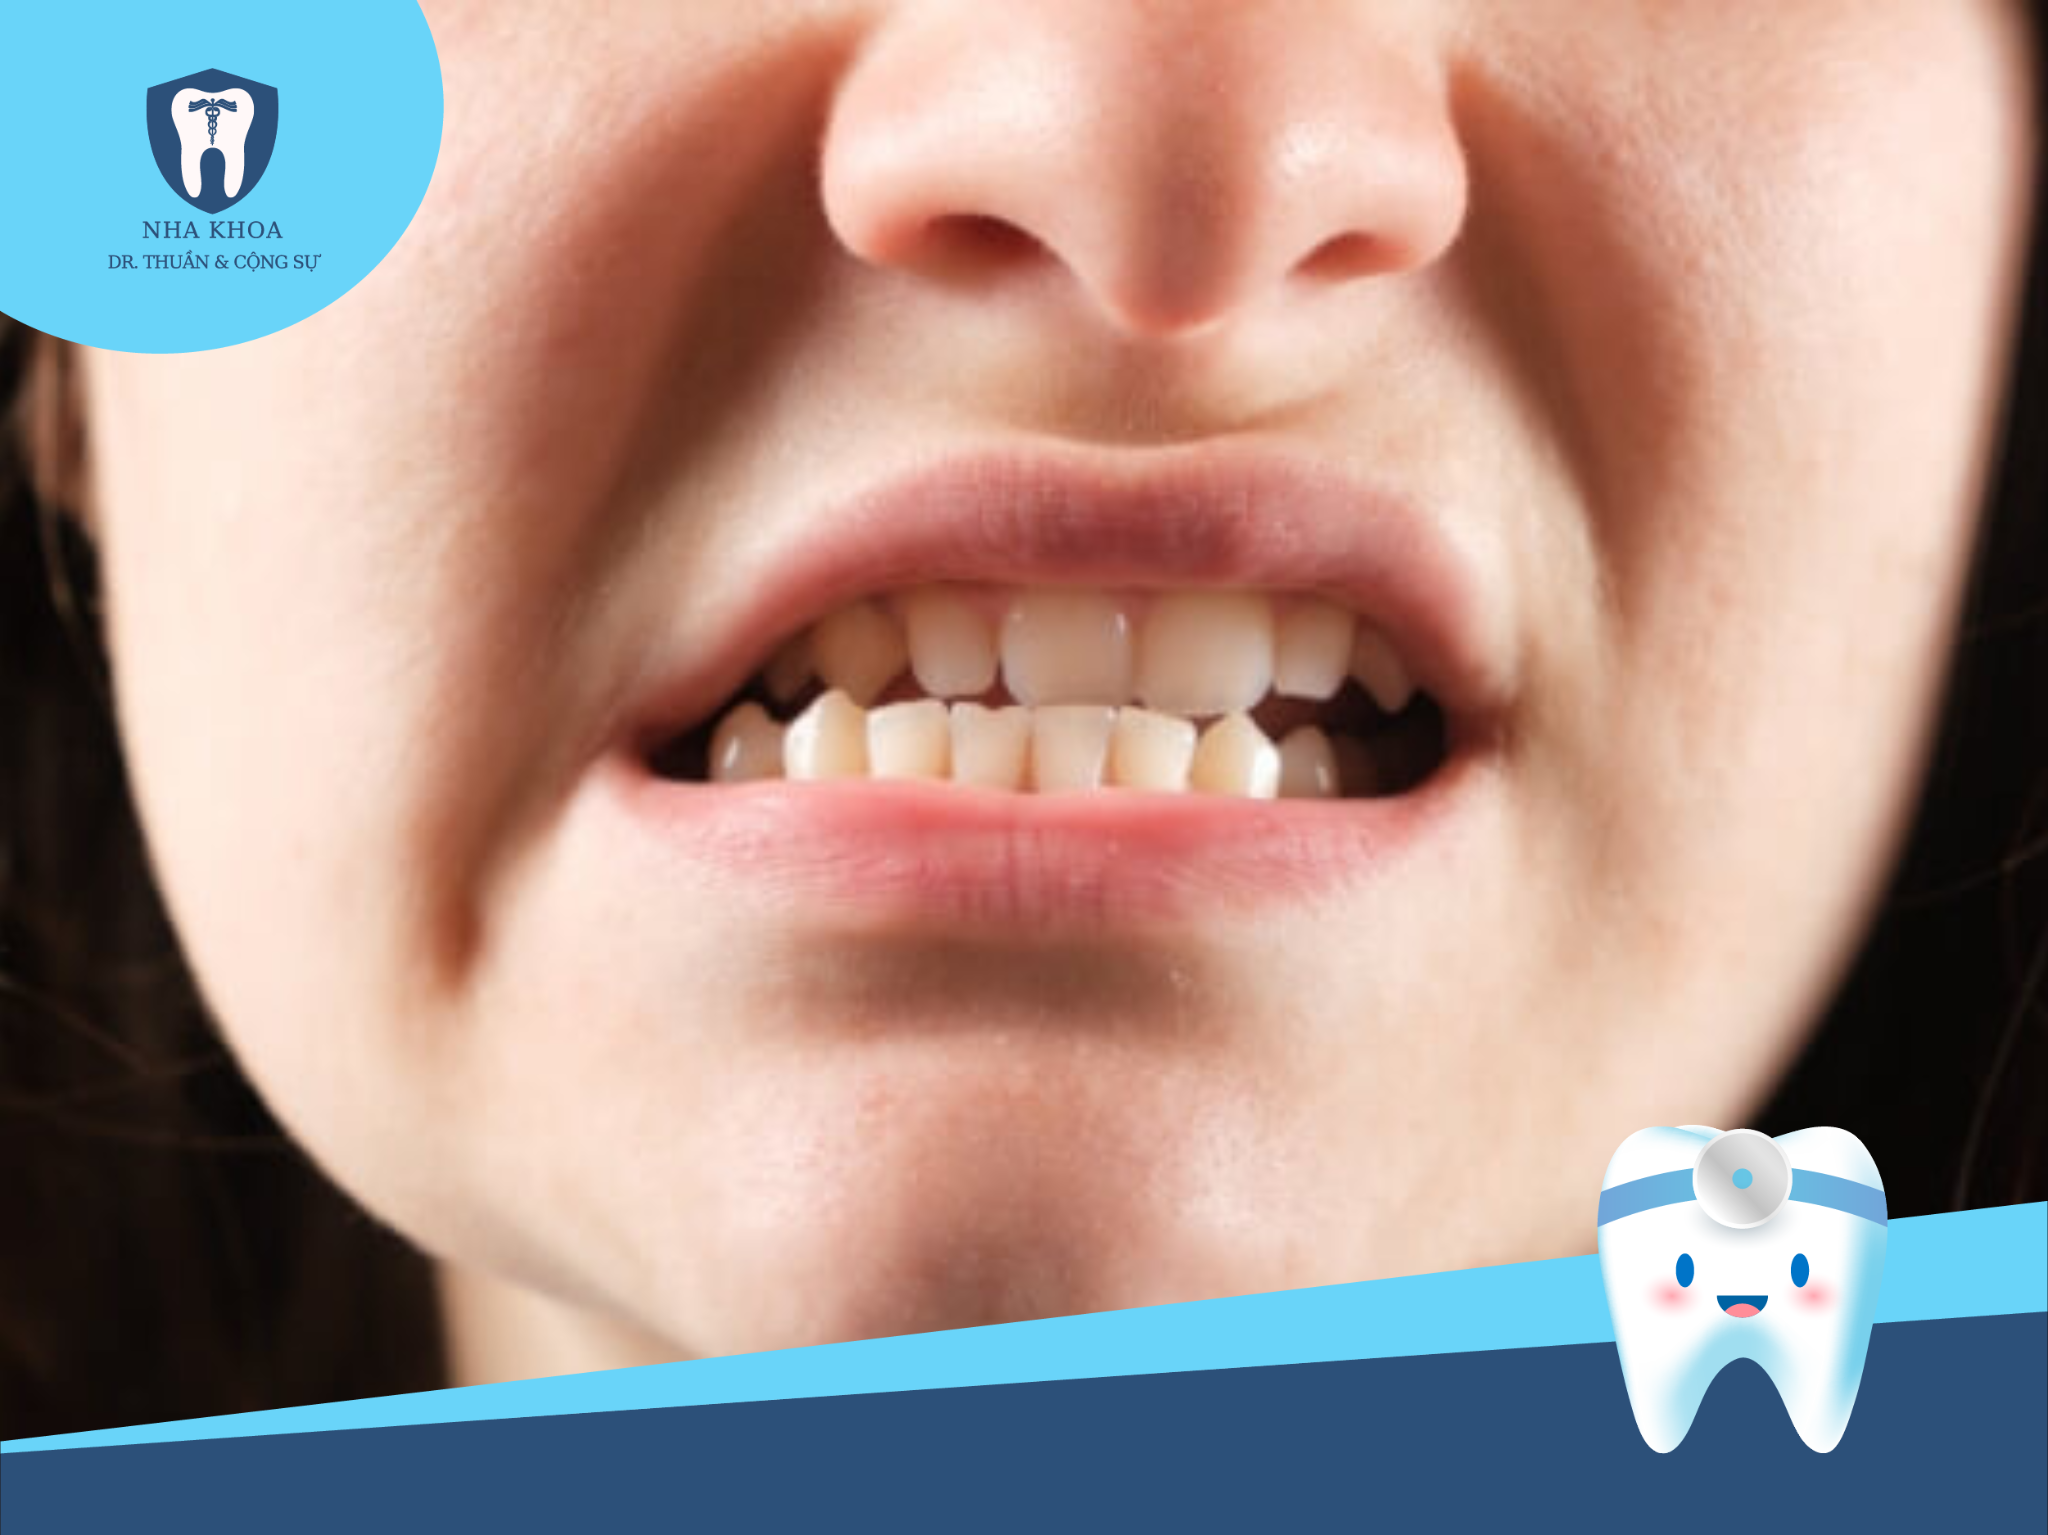 Trong trường hợp khớp cắn bị sai lệch nghiêm trọng, bạn có thể cần phải tiến hành niềng răng chỉnh nha trước để điều chỉnh khớp cắn về vị trí đúng, sau đó mới xem xét khả năng bọc răng sứ.